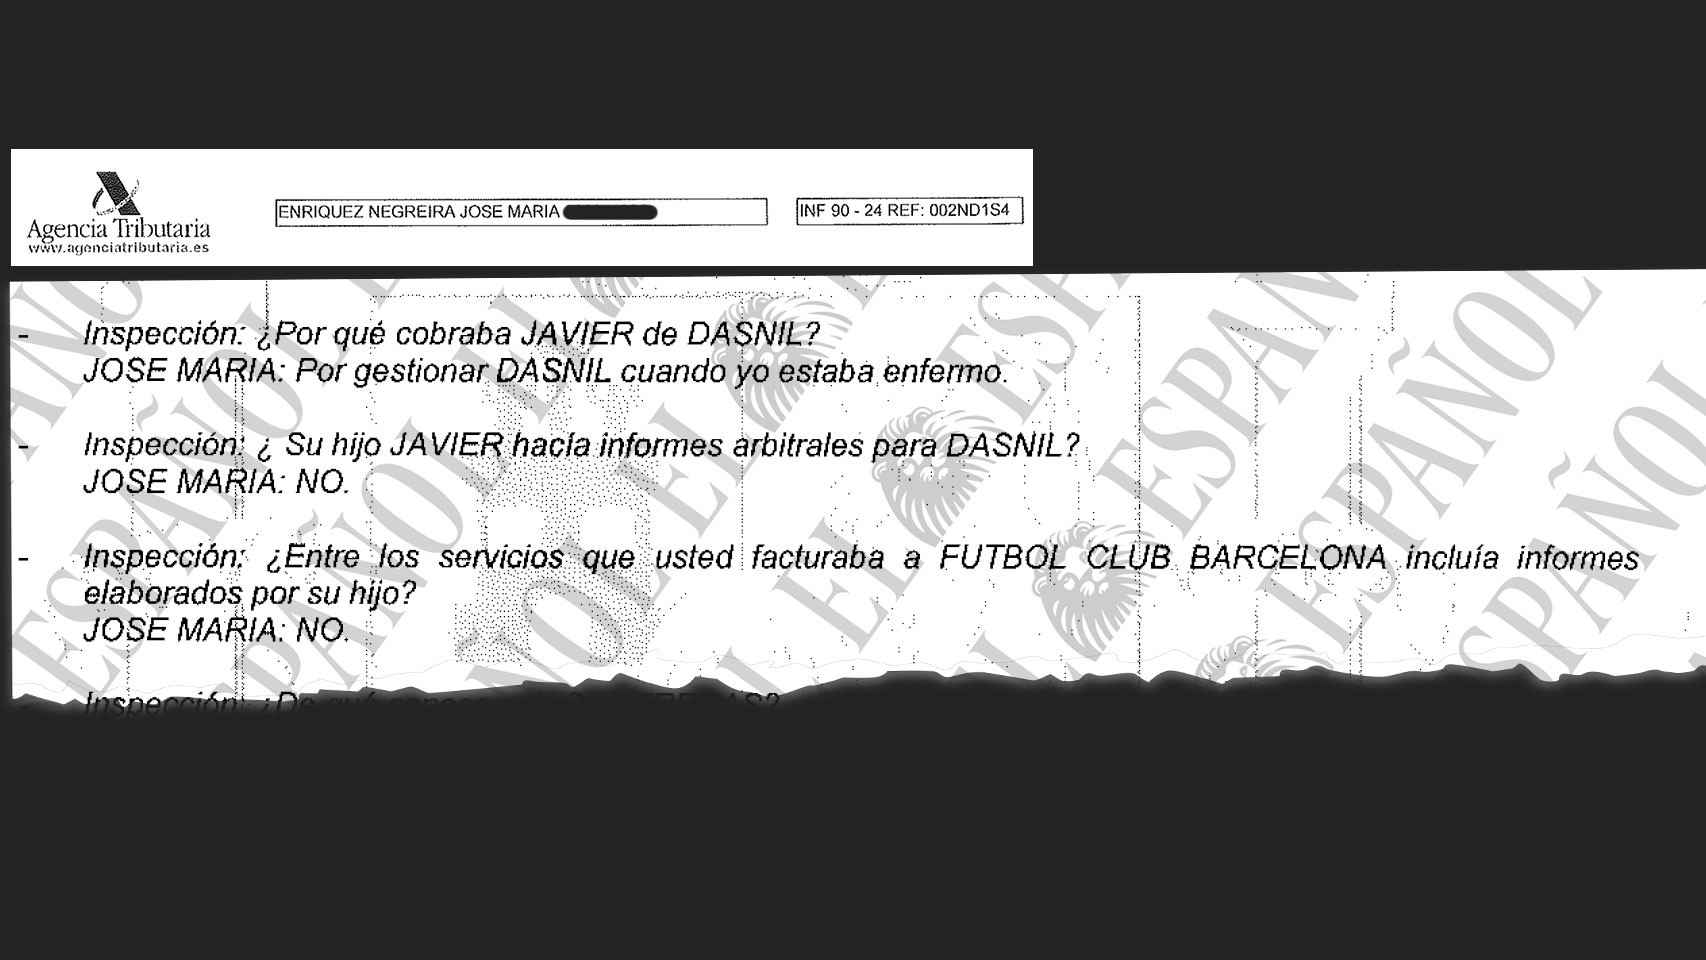 Fragmento de la declaración de José María Enríquez Negreira ante la Agencia Tributaria